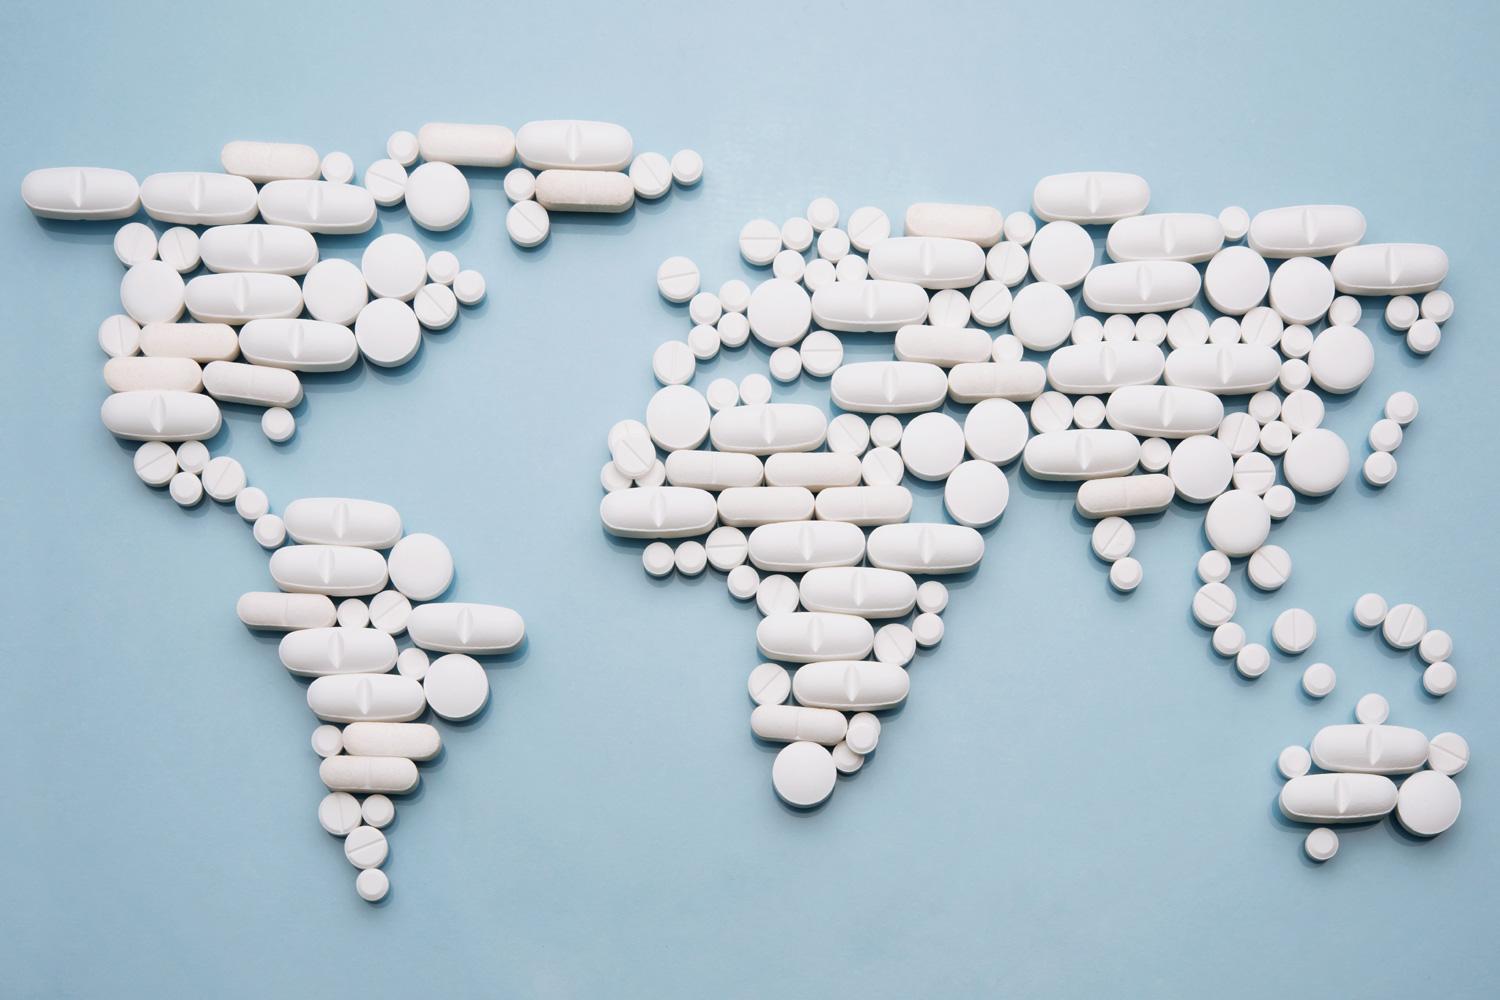 מפת העולם בנויה מתרופות - אלמנט עיצובי